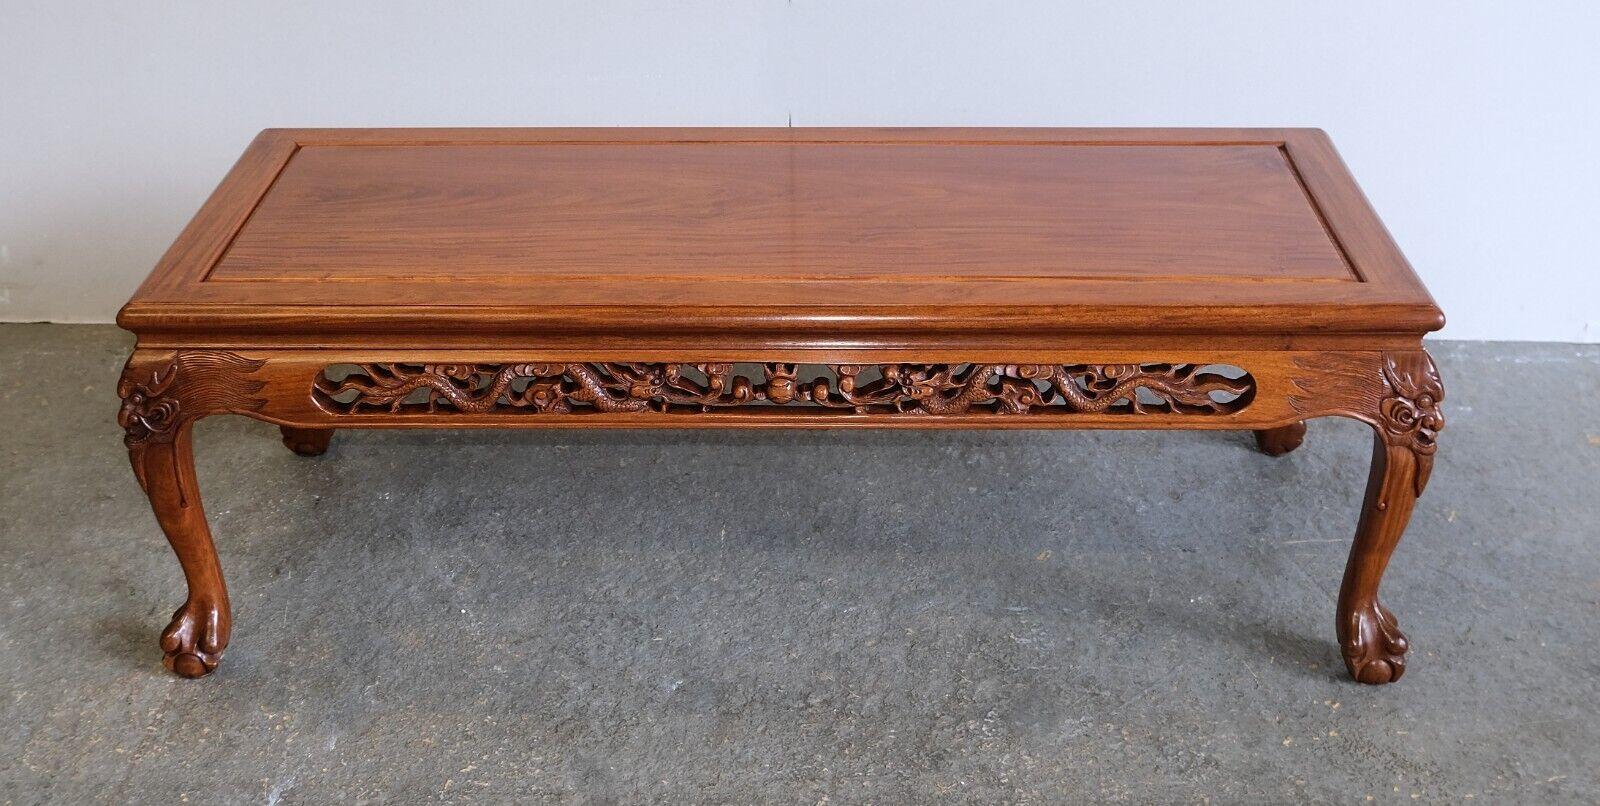 Nous sommes ravis d'offrir à la vente cette magnifique table basse japonaise chinoise sculptée à la main avec des dragons et des pieds en griffe.  

Cette table basse attrayante, bien fabriquée et sculptée à la main, attire le regard sous tous les